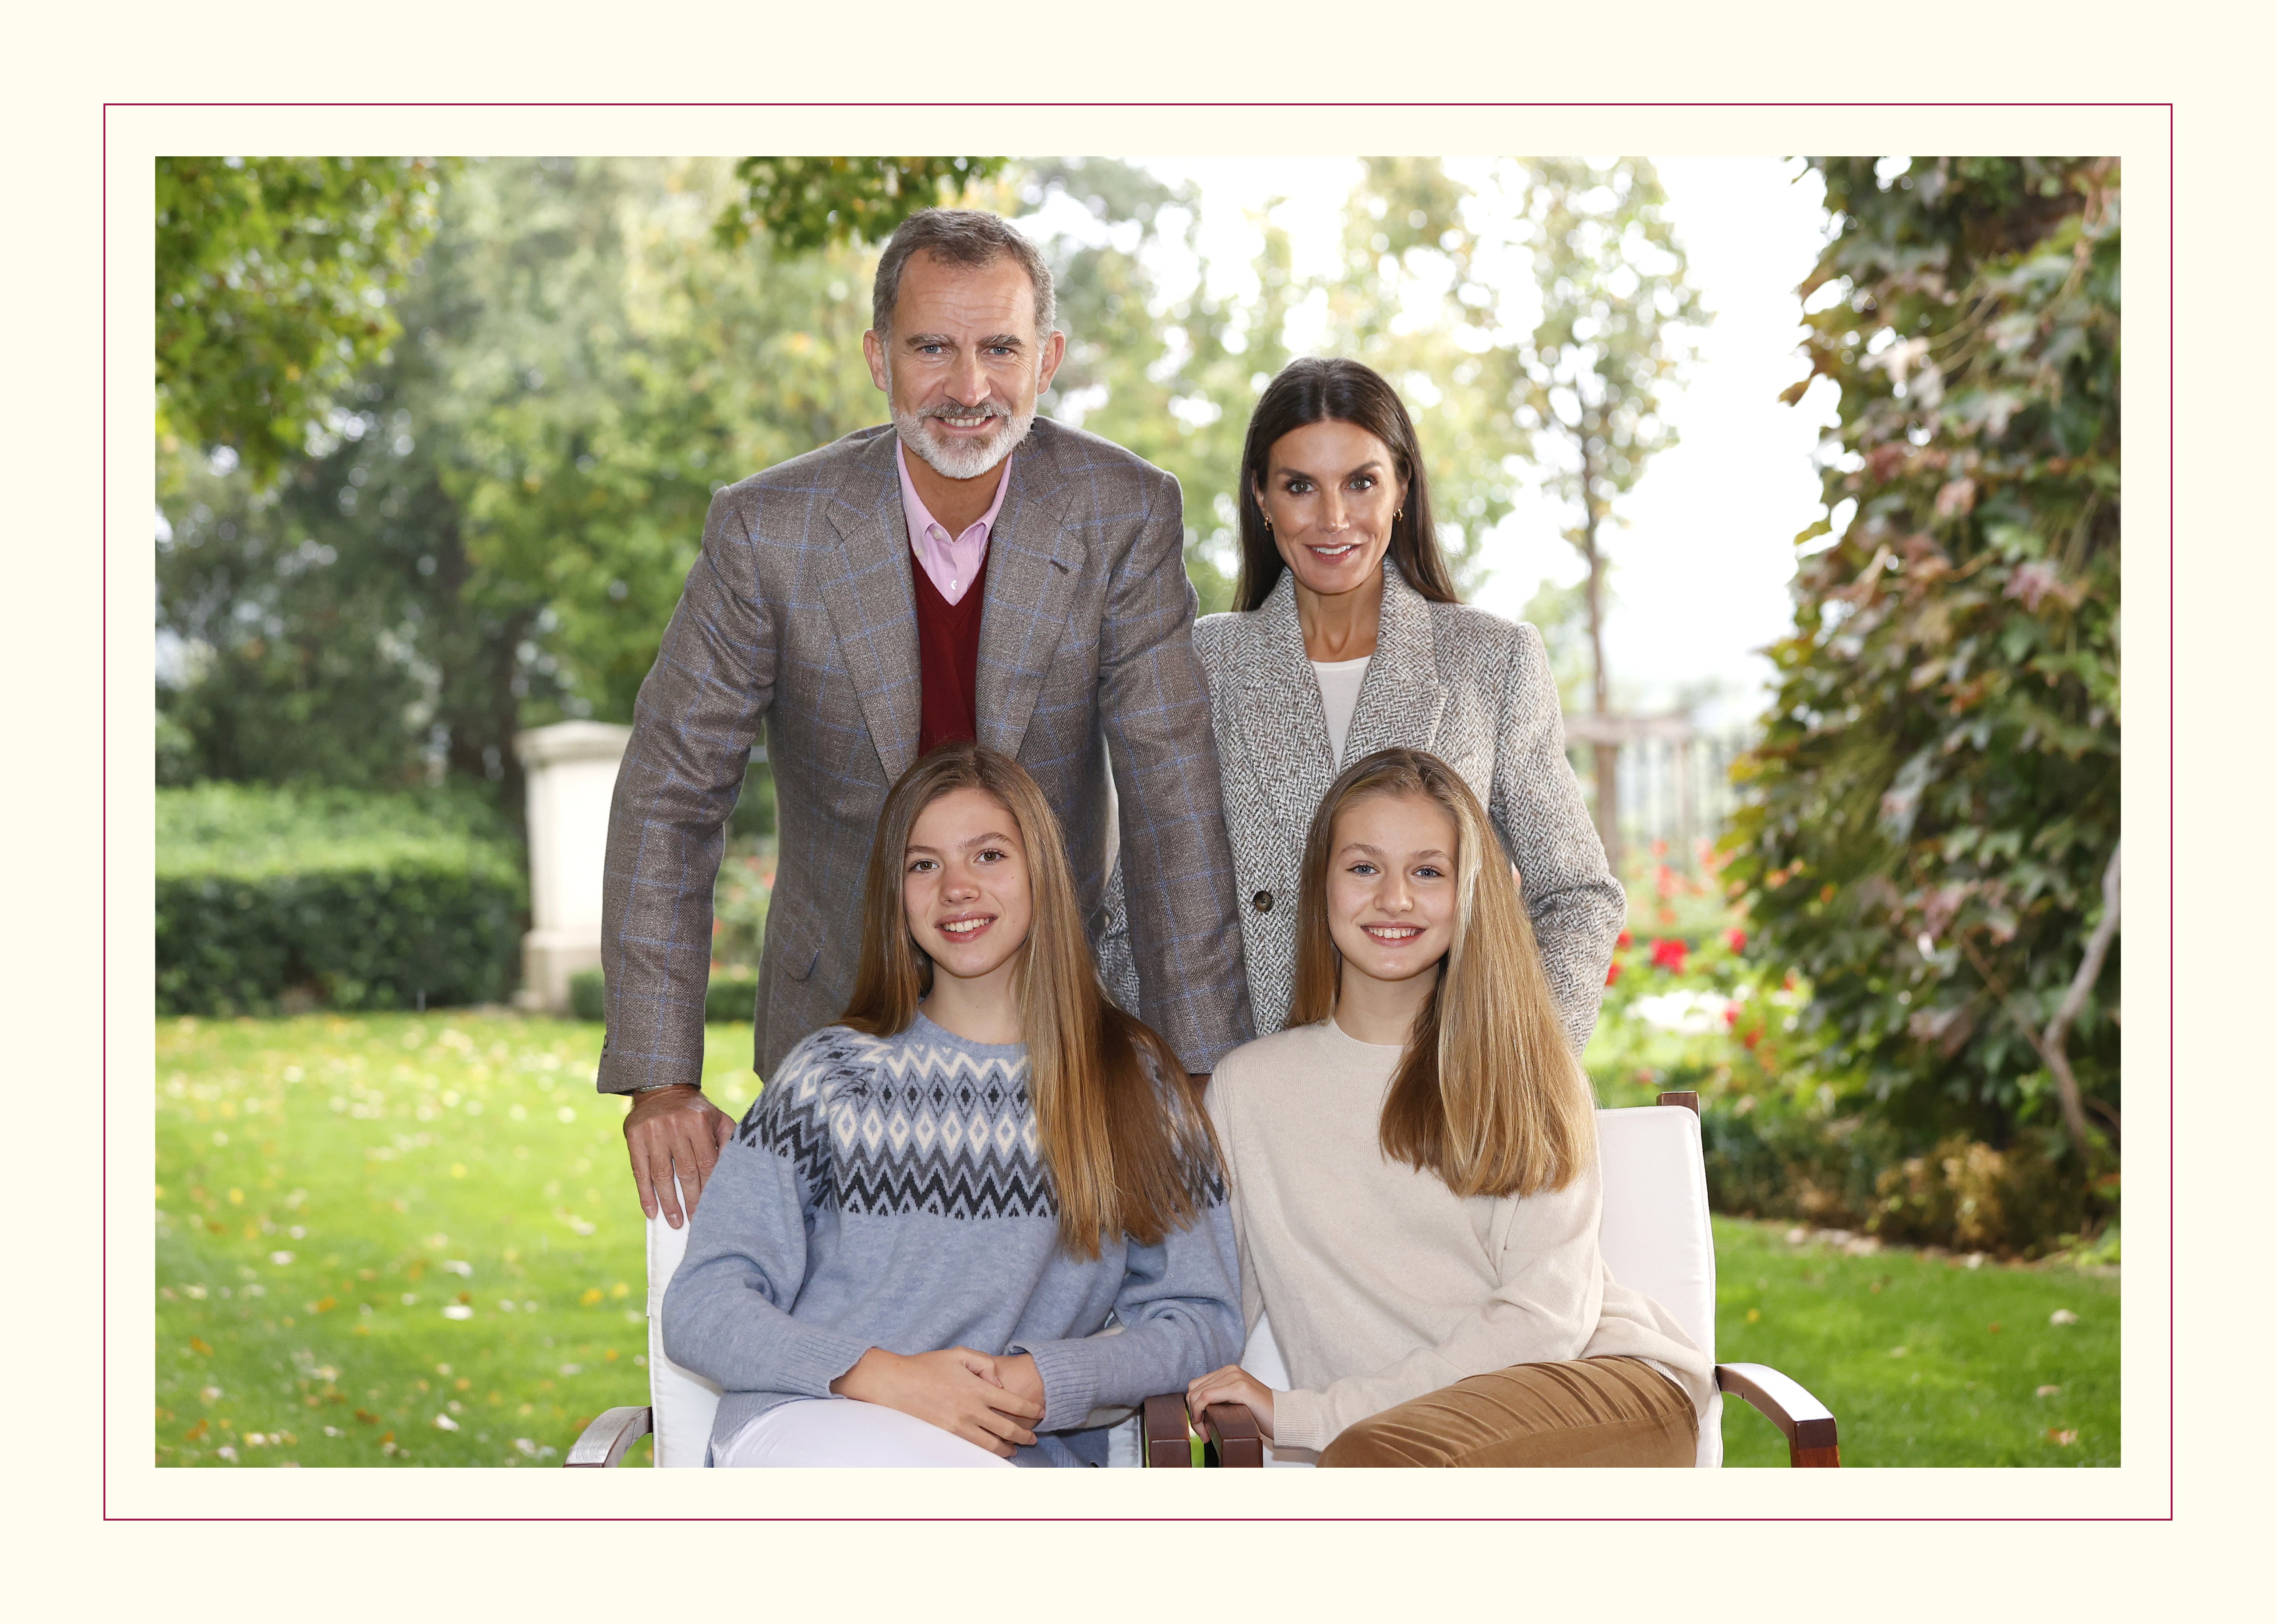 La carte de Noël royale avec une photographie du roi Felipe VI d'Espagne avec la reine Letizia d'Espagne et leurs enfants la princesse héritière Leonor d'Espagne et la princesse Sofia d'Espagne le 16 décembre 2021 à Madrid, en Espagne. / Source : Getty Images